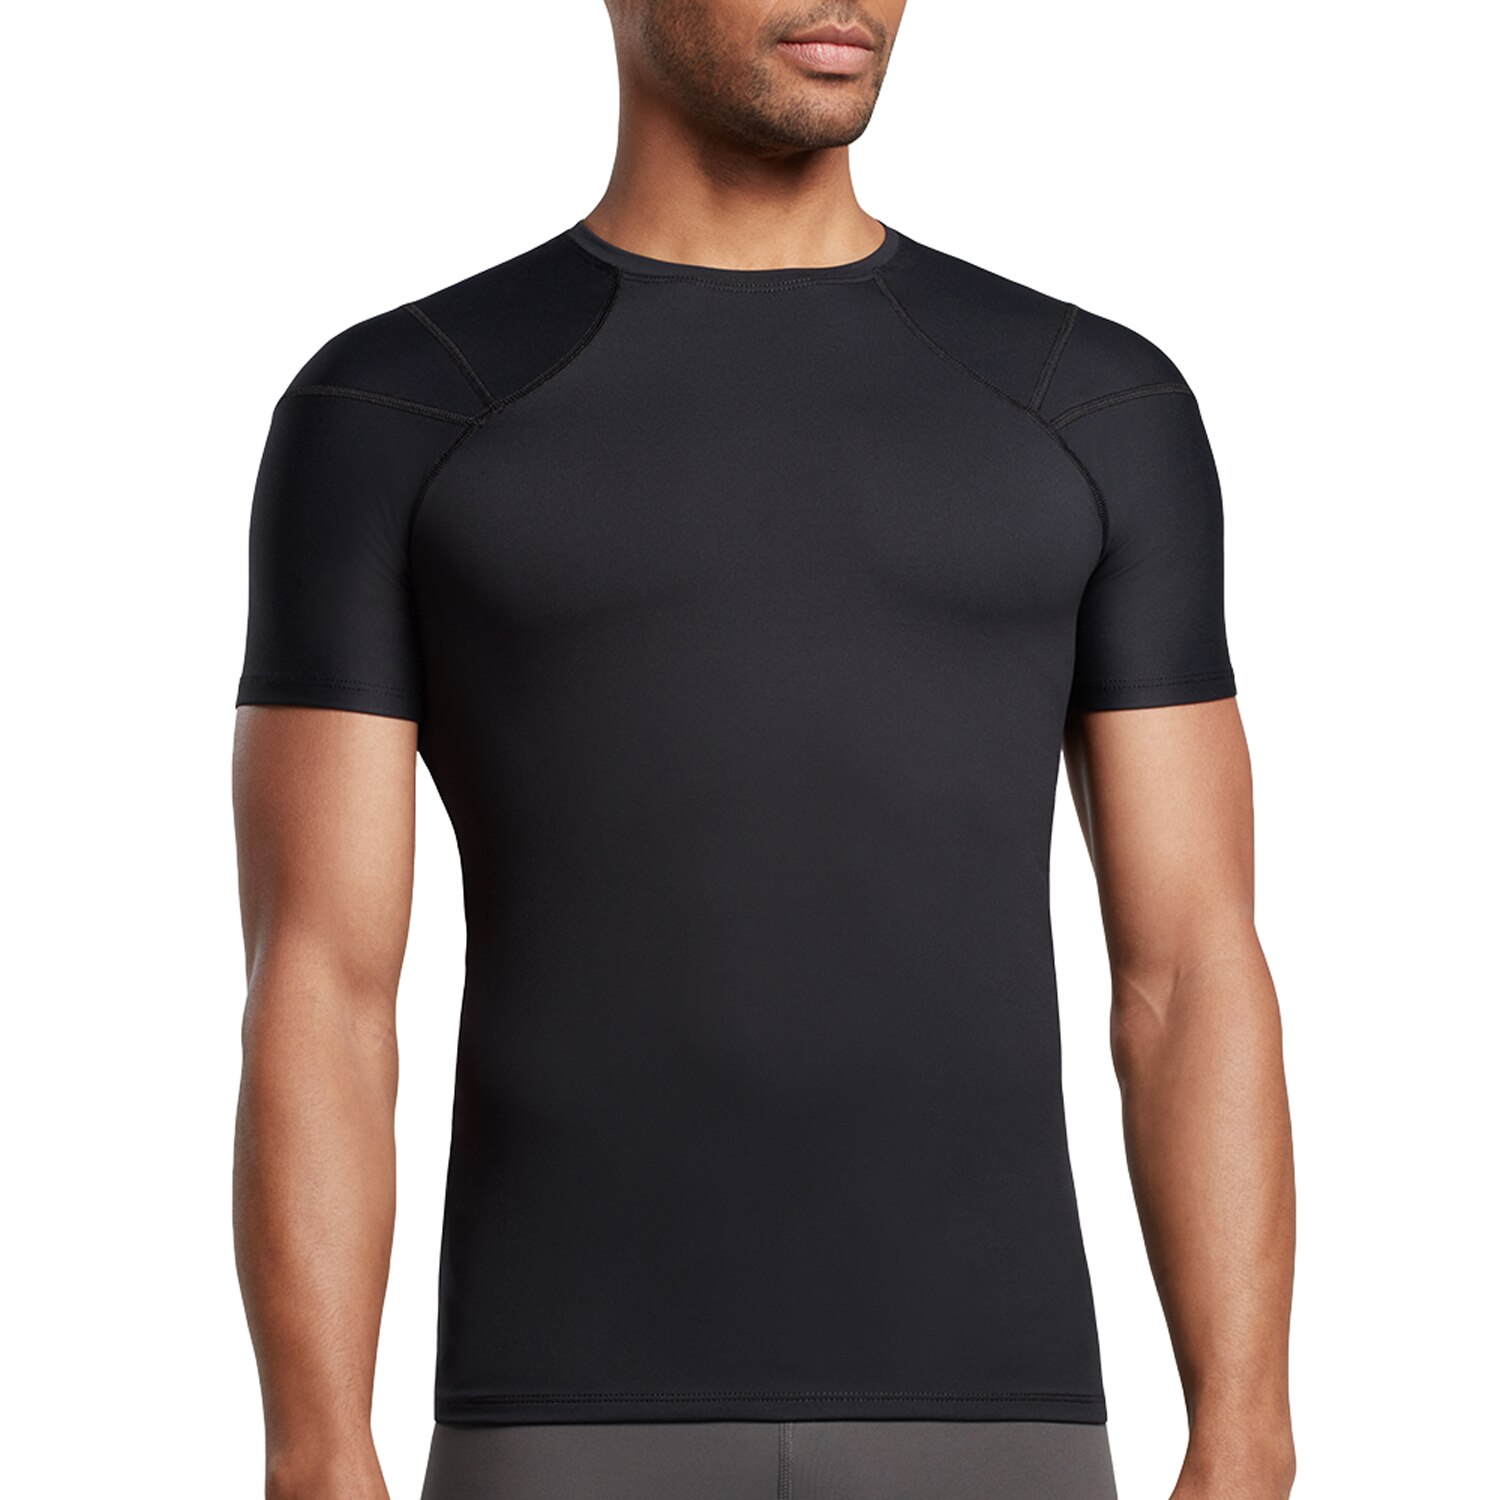 Tommie Copper Men's Compression Shoulder Support Shirt, Black, L | Pick ...